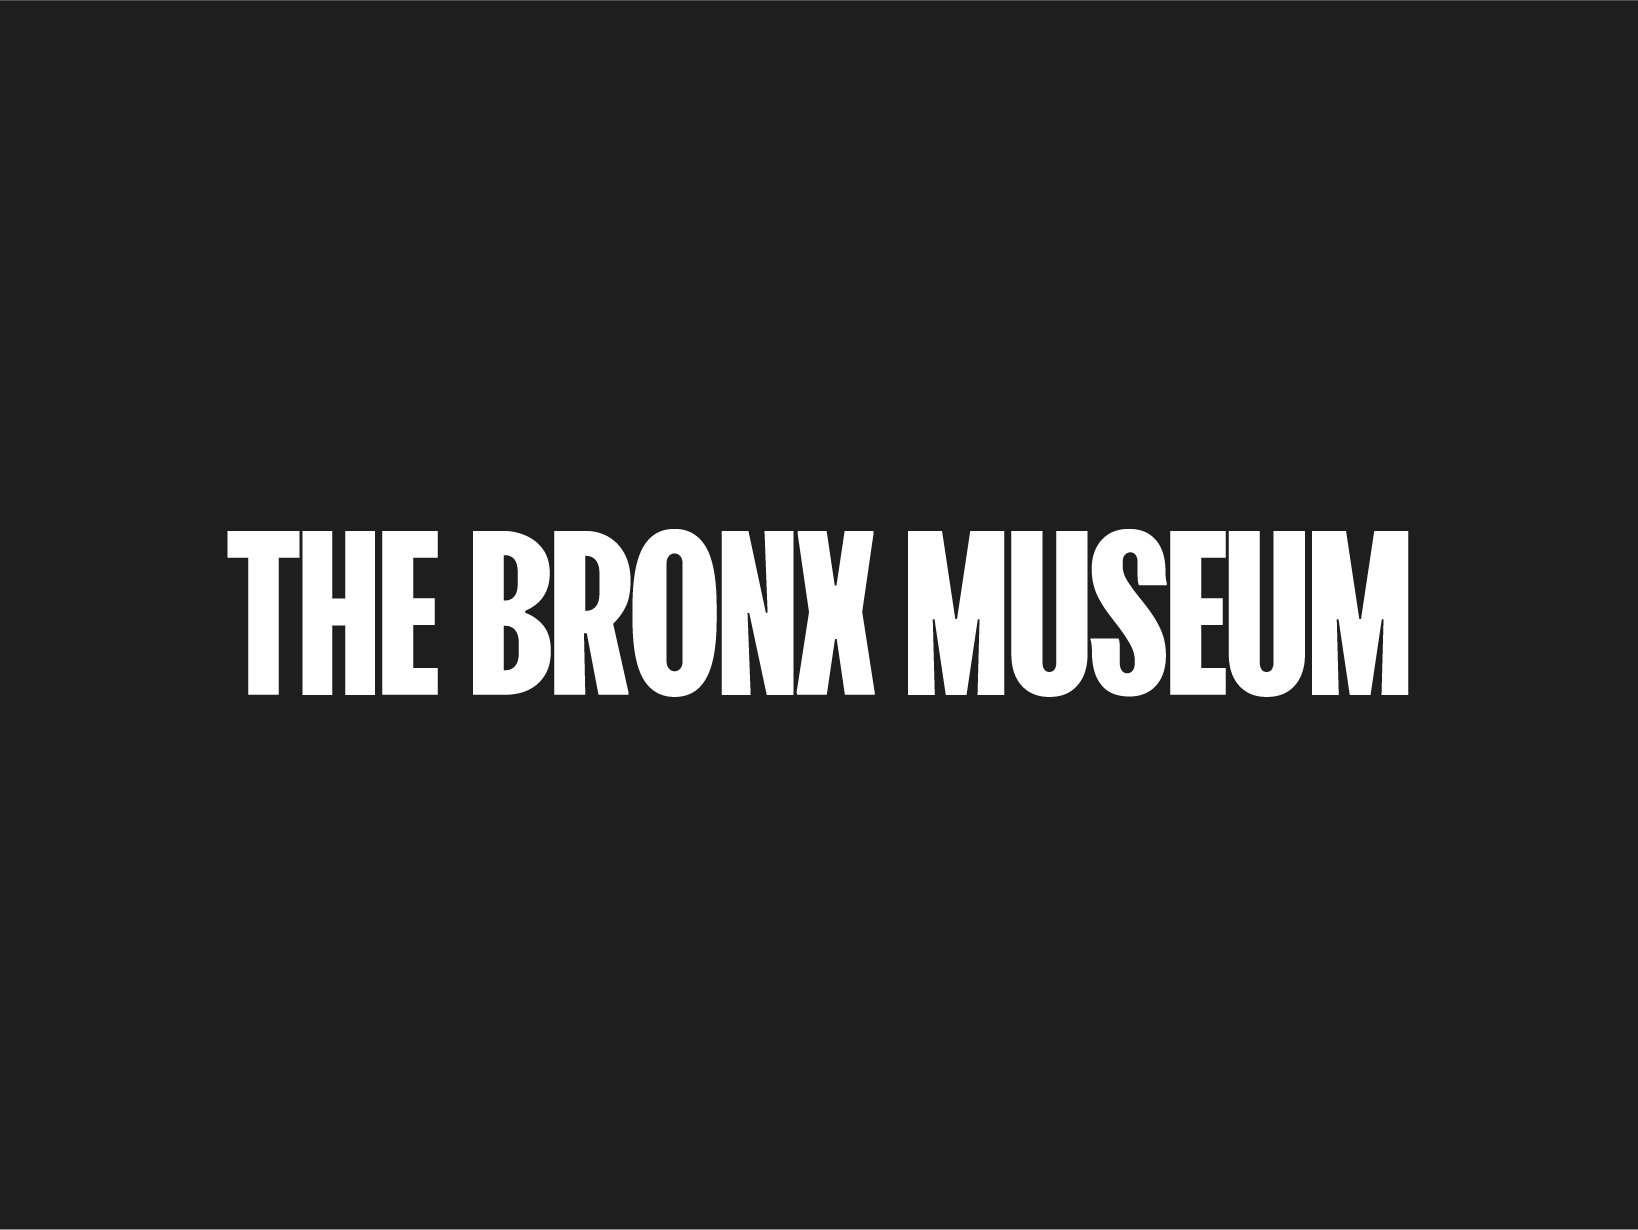 (c) Bronxmuseum.org